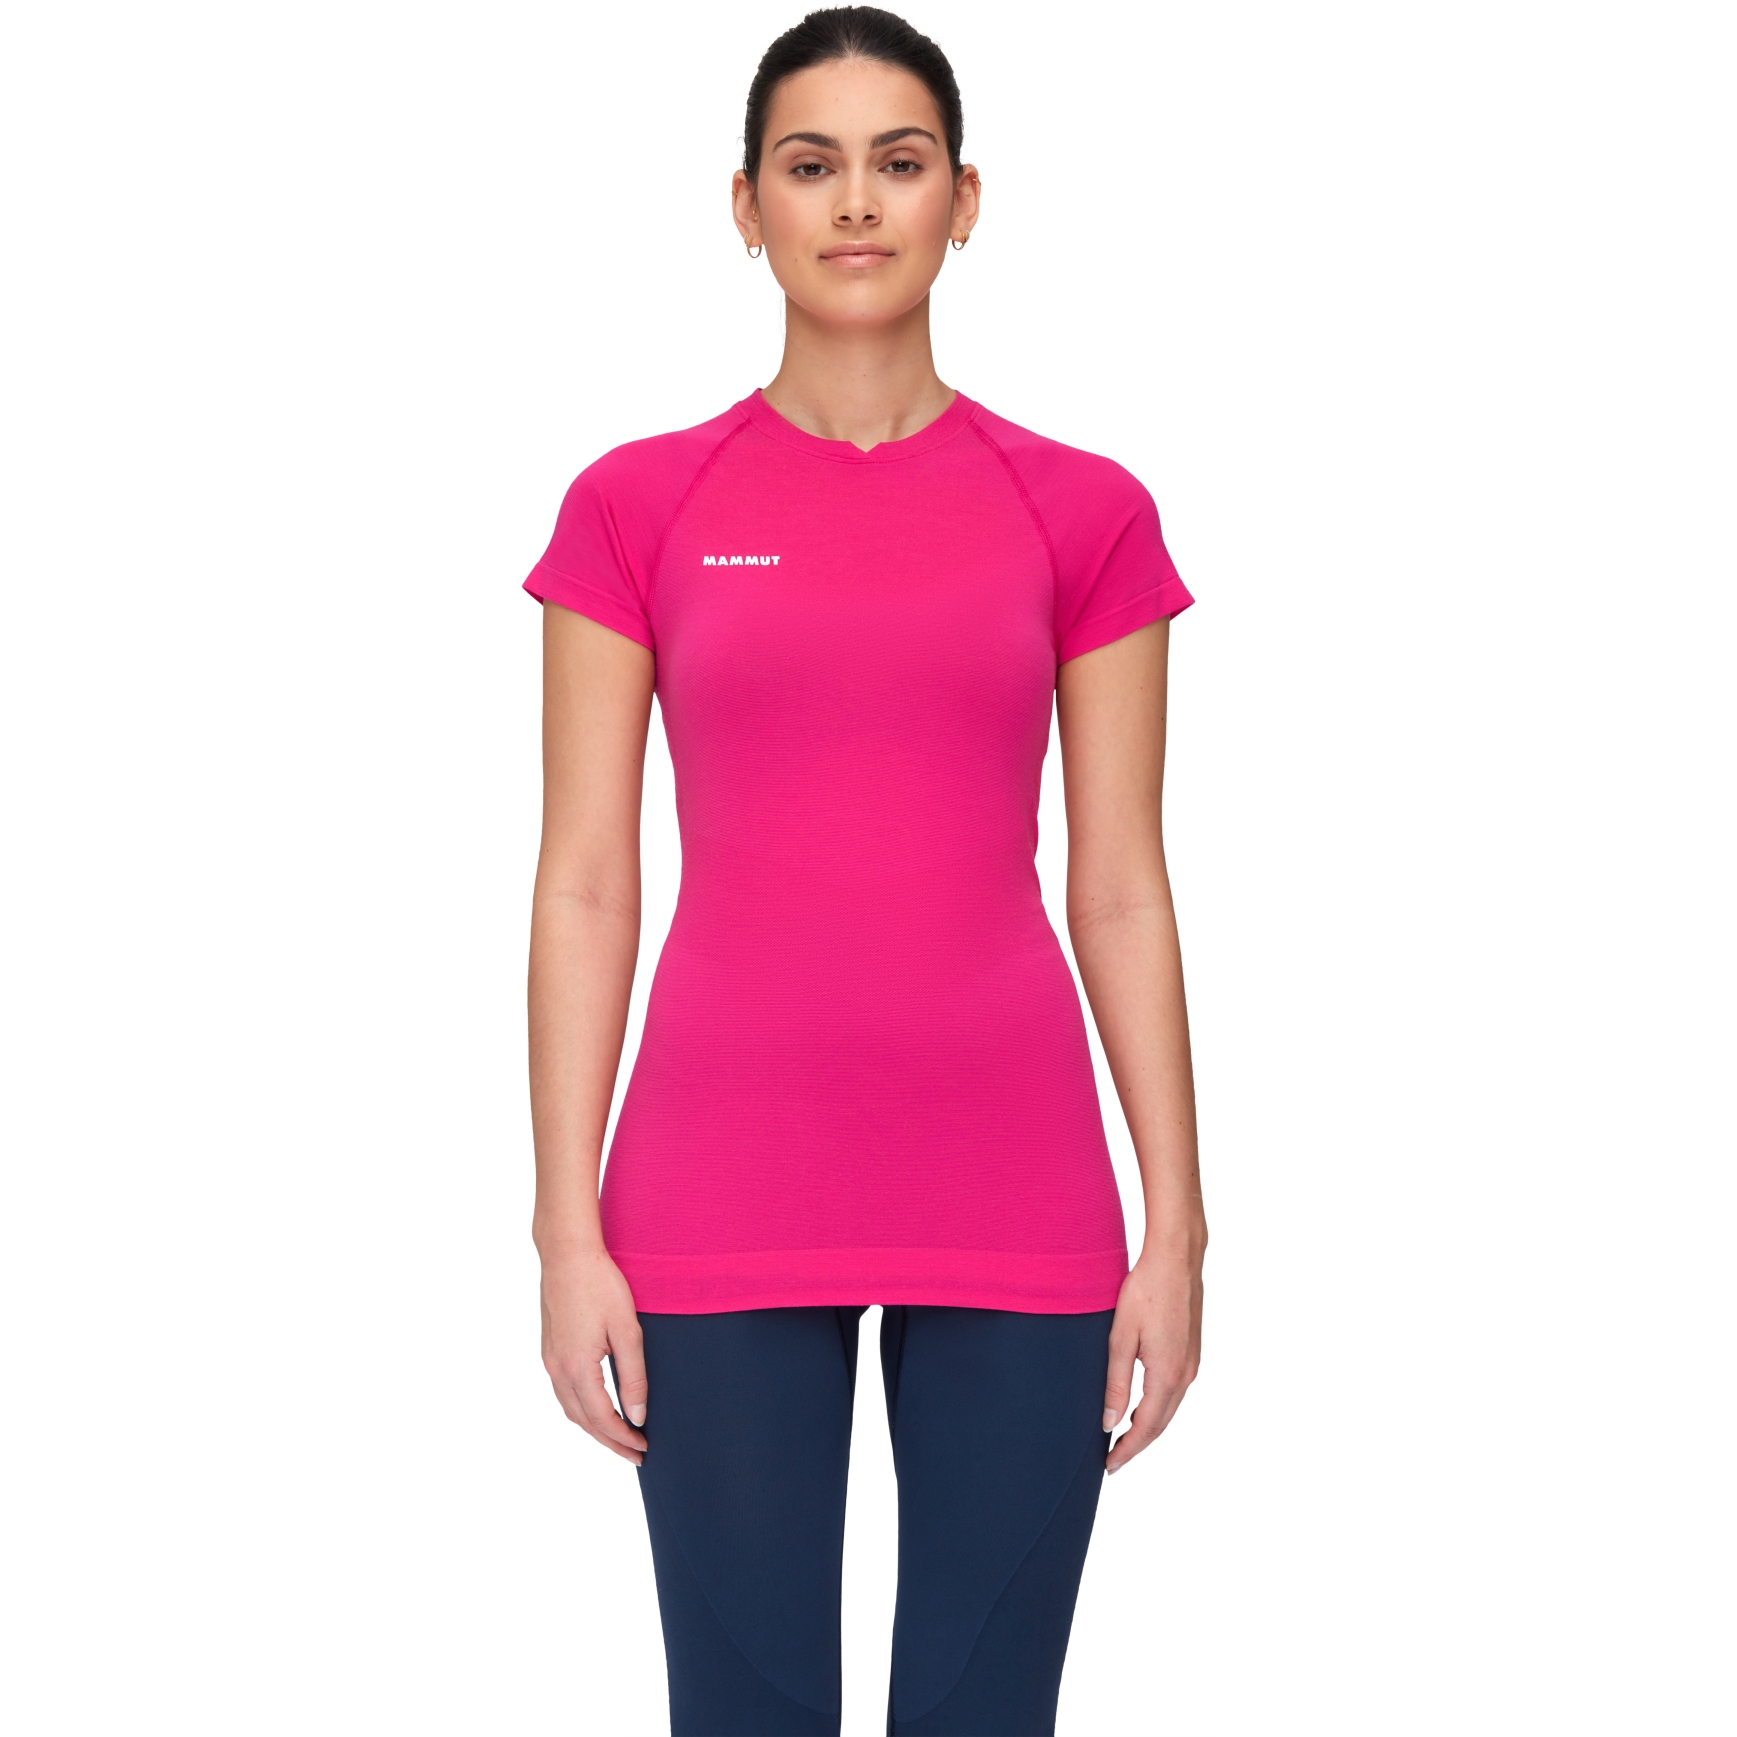 Produktbild von Mammut Trift Damen T-Shirt - pink